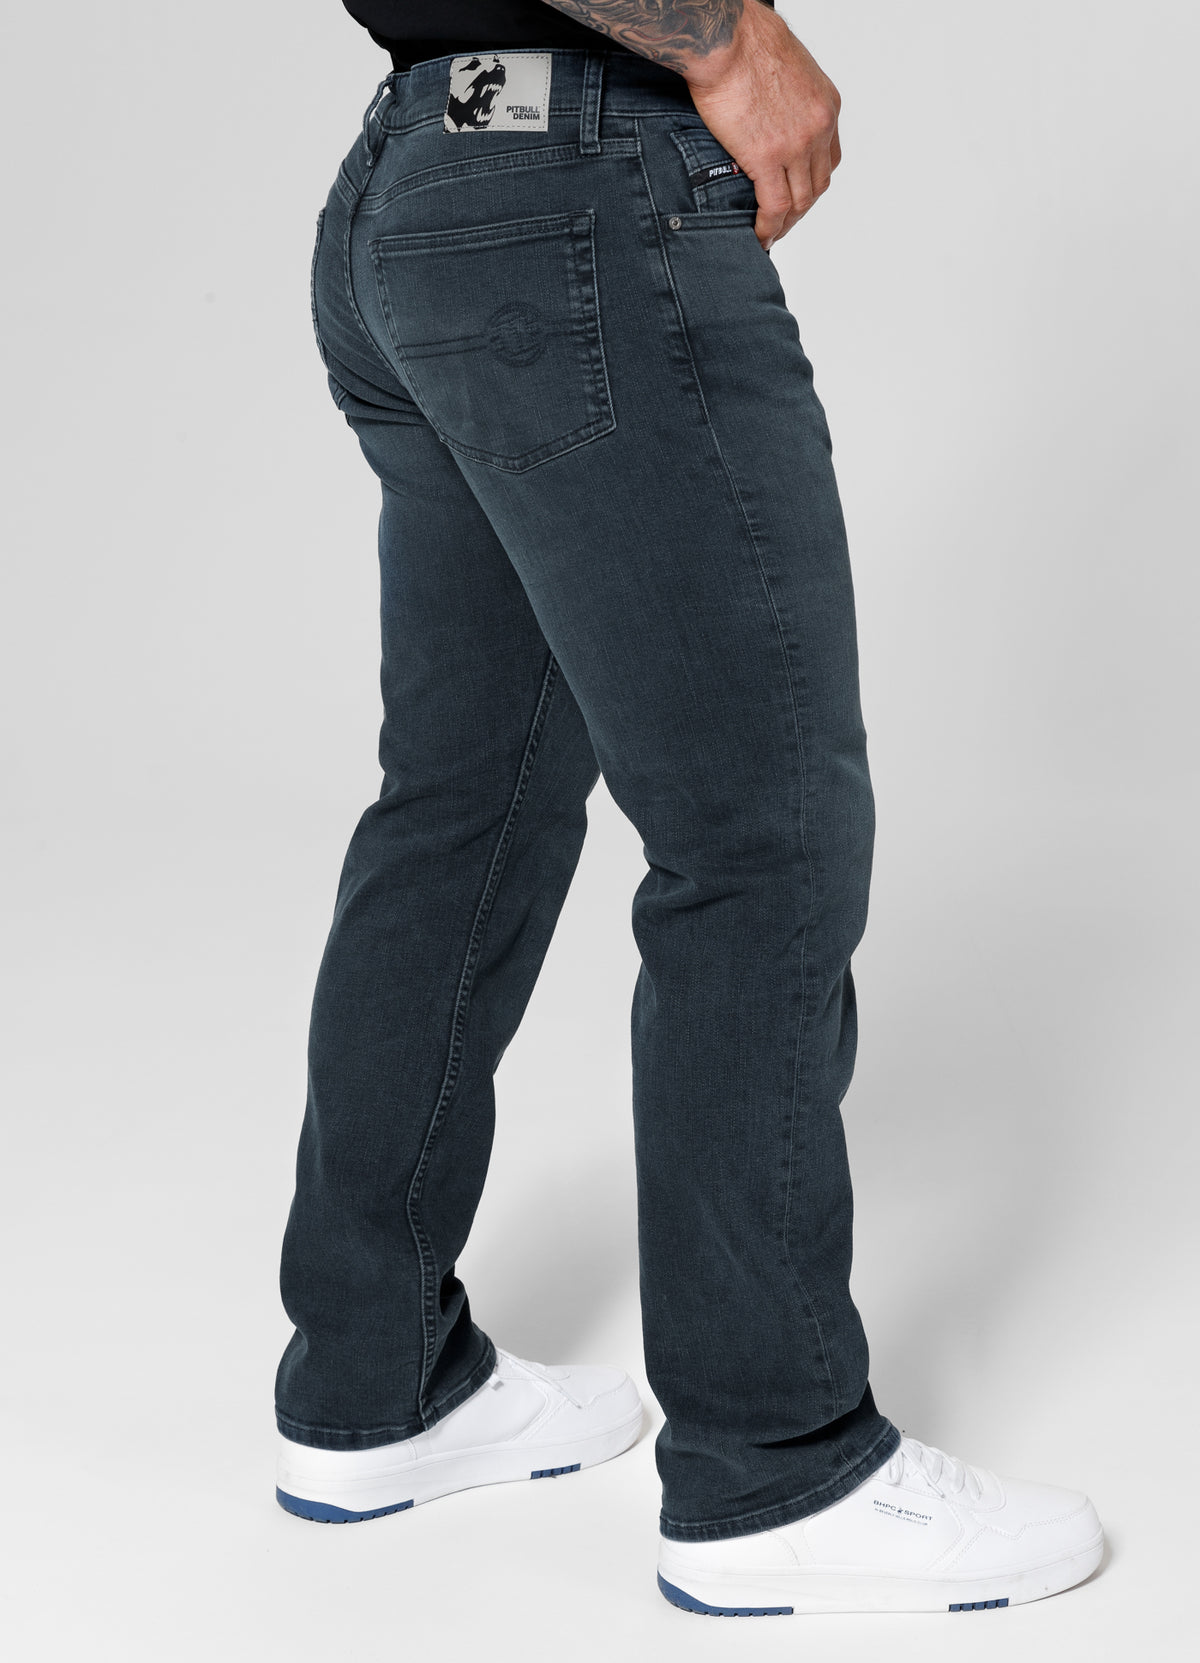 HIGHLANDER Long Dark Wash Jeans